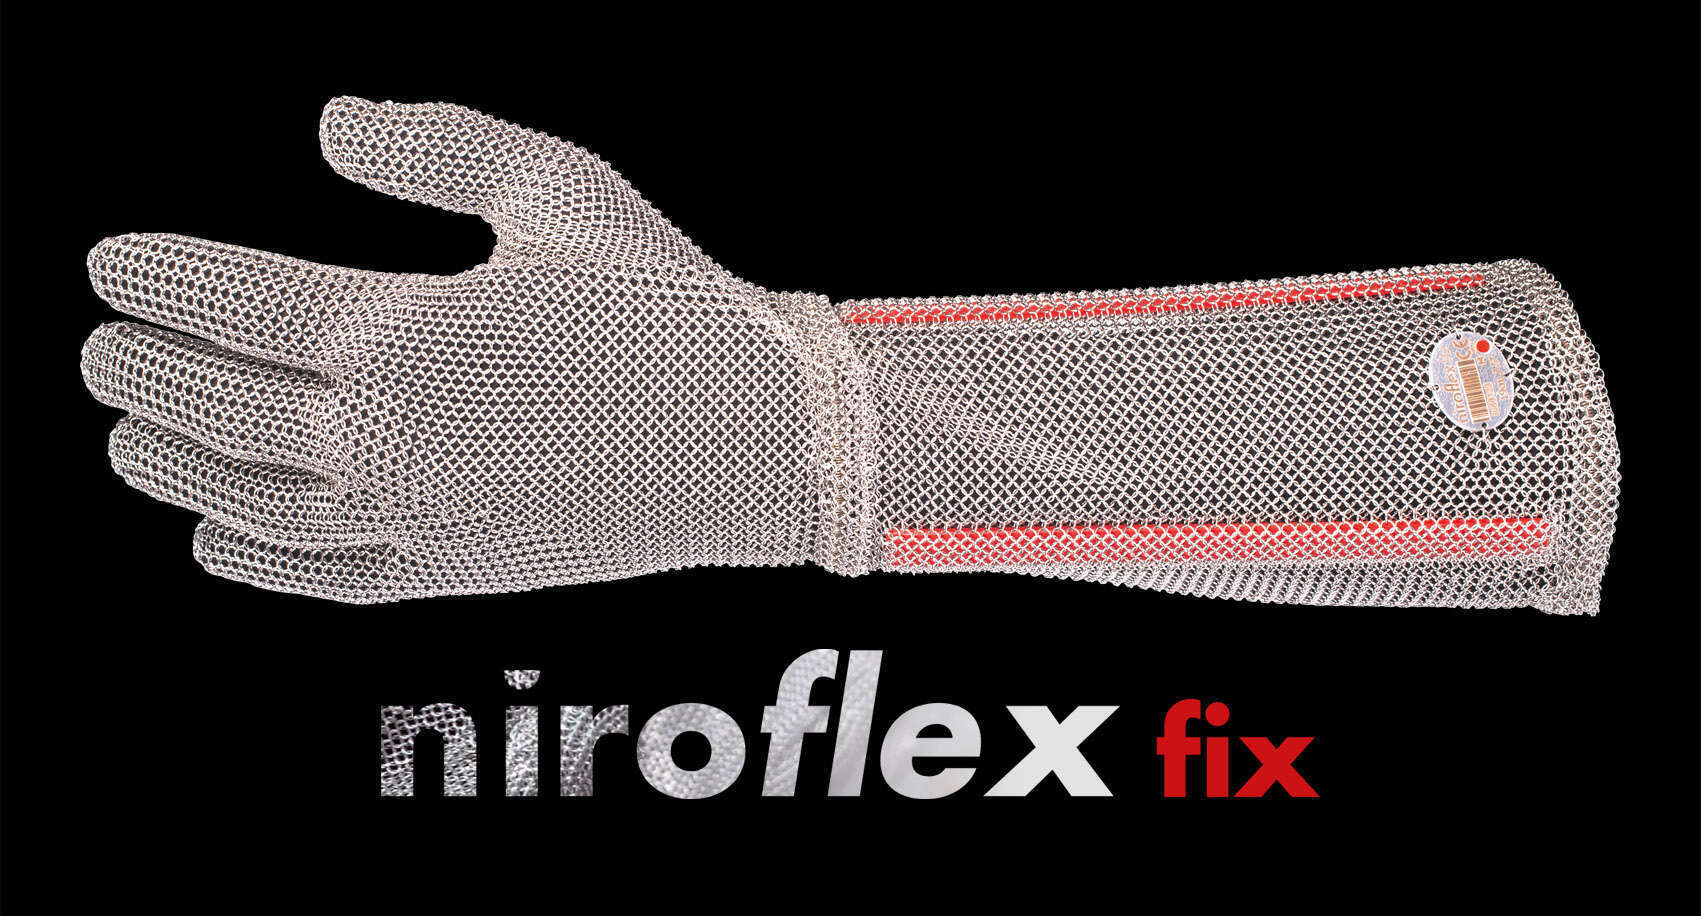 NIROFLEX fix, metzger handschuhe und Kettenhandschuhe für Metzger, Fleischer, Schlachthaus, Schlachthof, Metal mesh gloves & Stab Resistent Stainless Steeel, Cut Proof